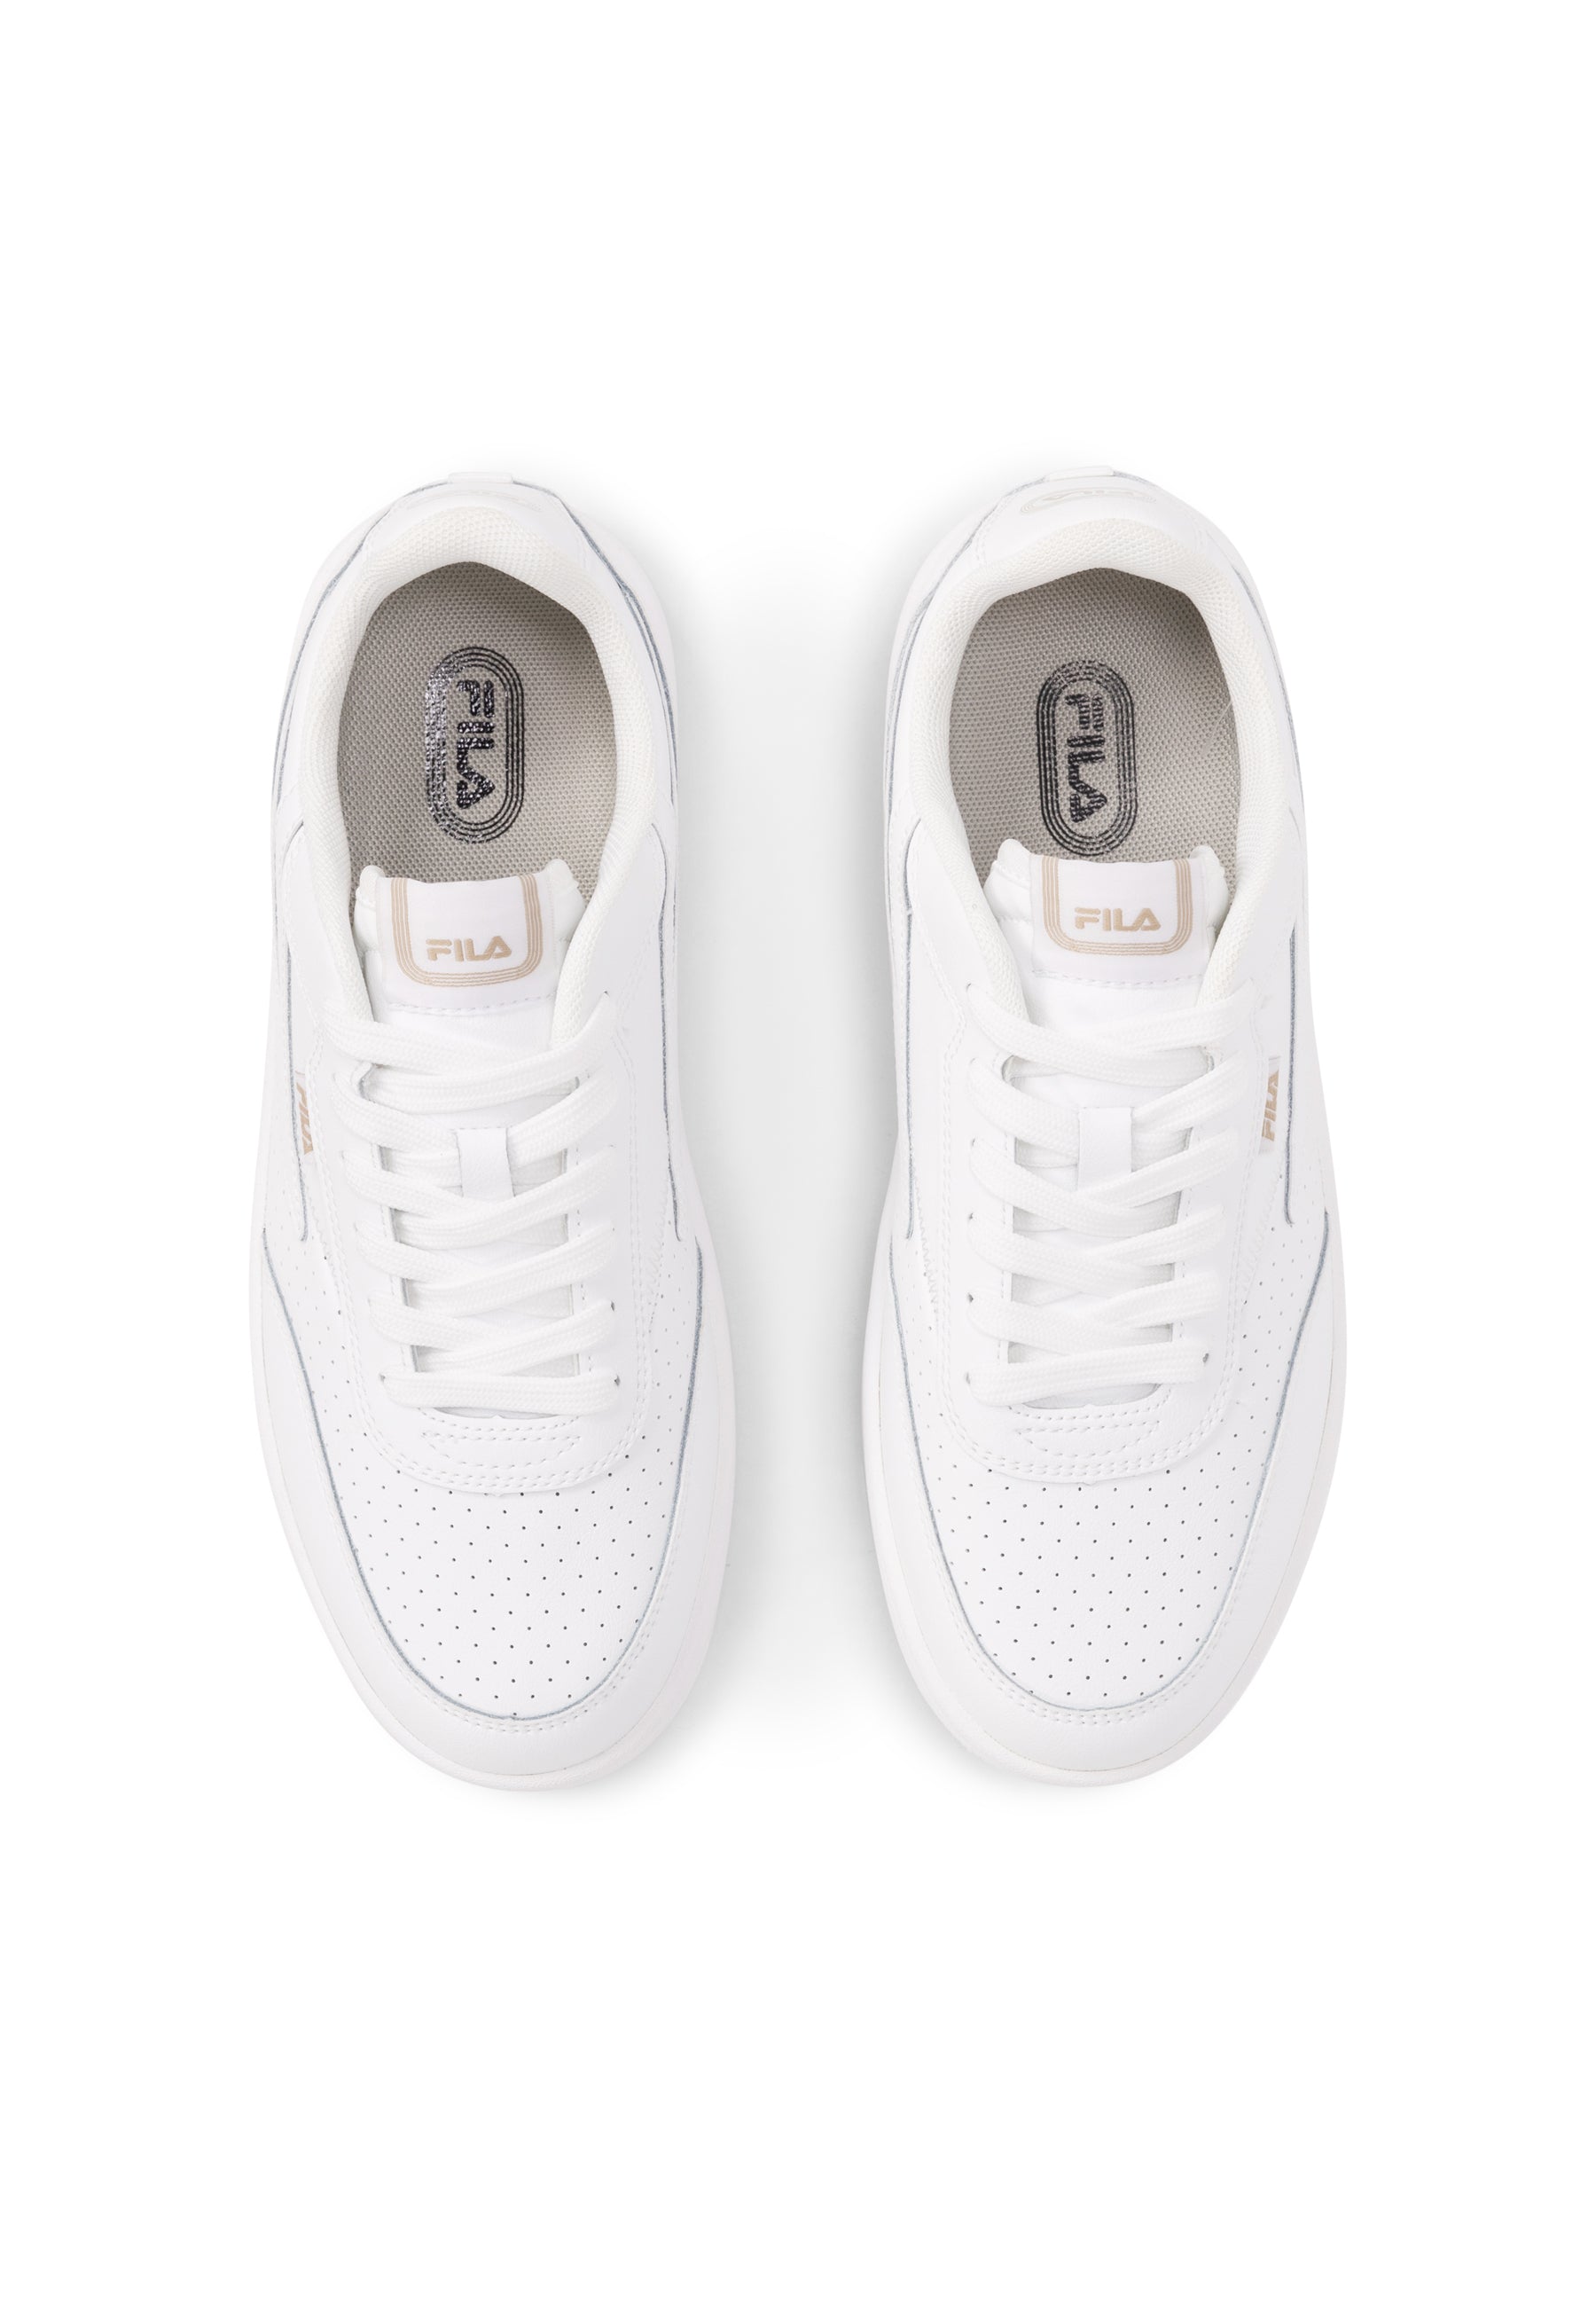 Fila Sevaro in White Sneakers Fila   